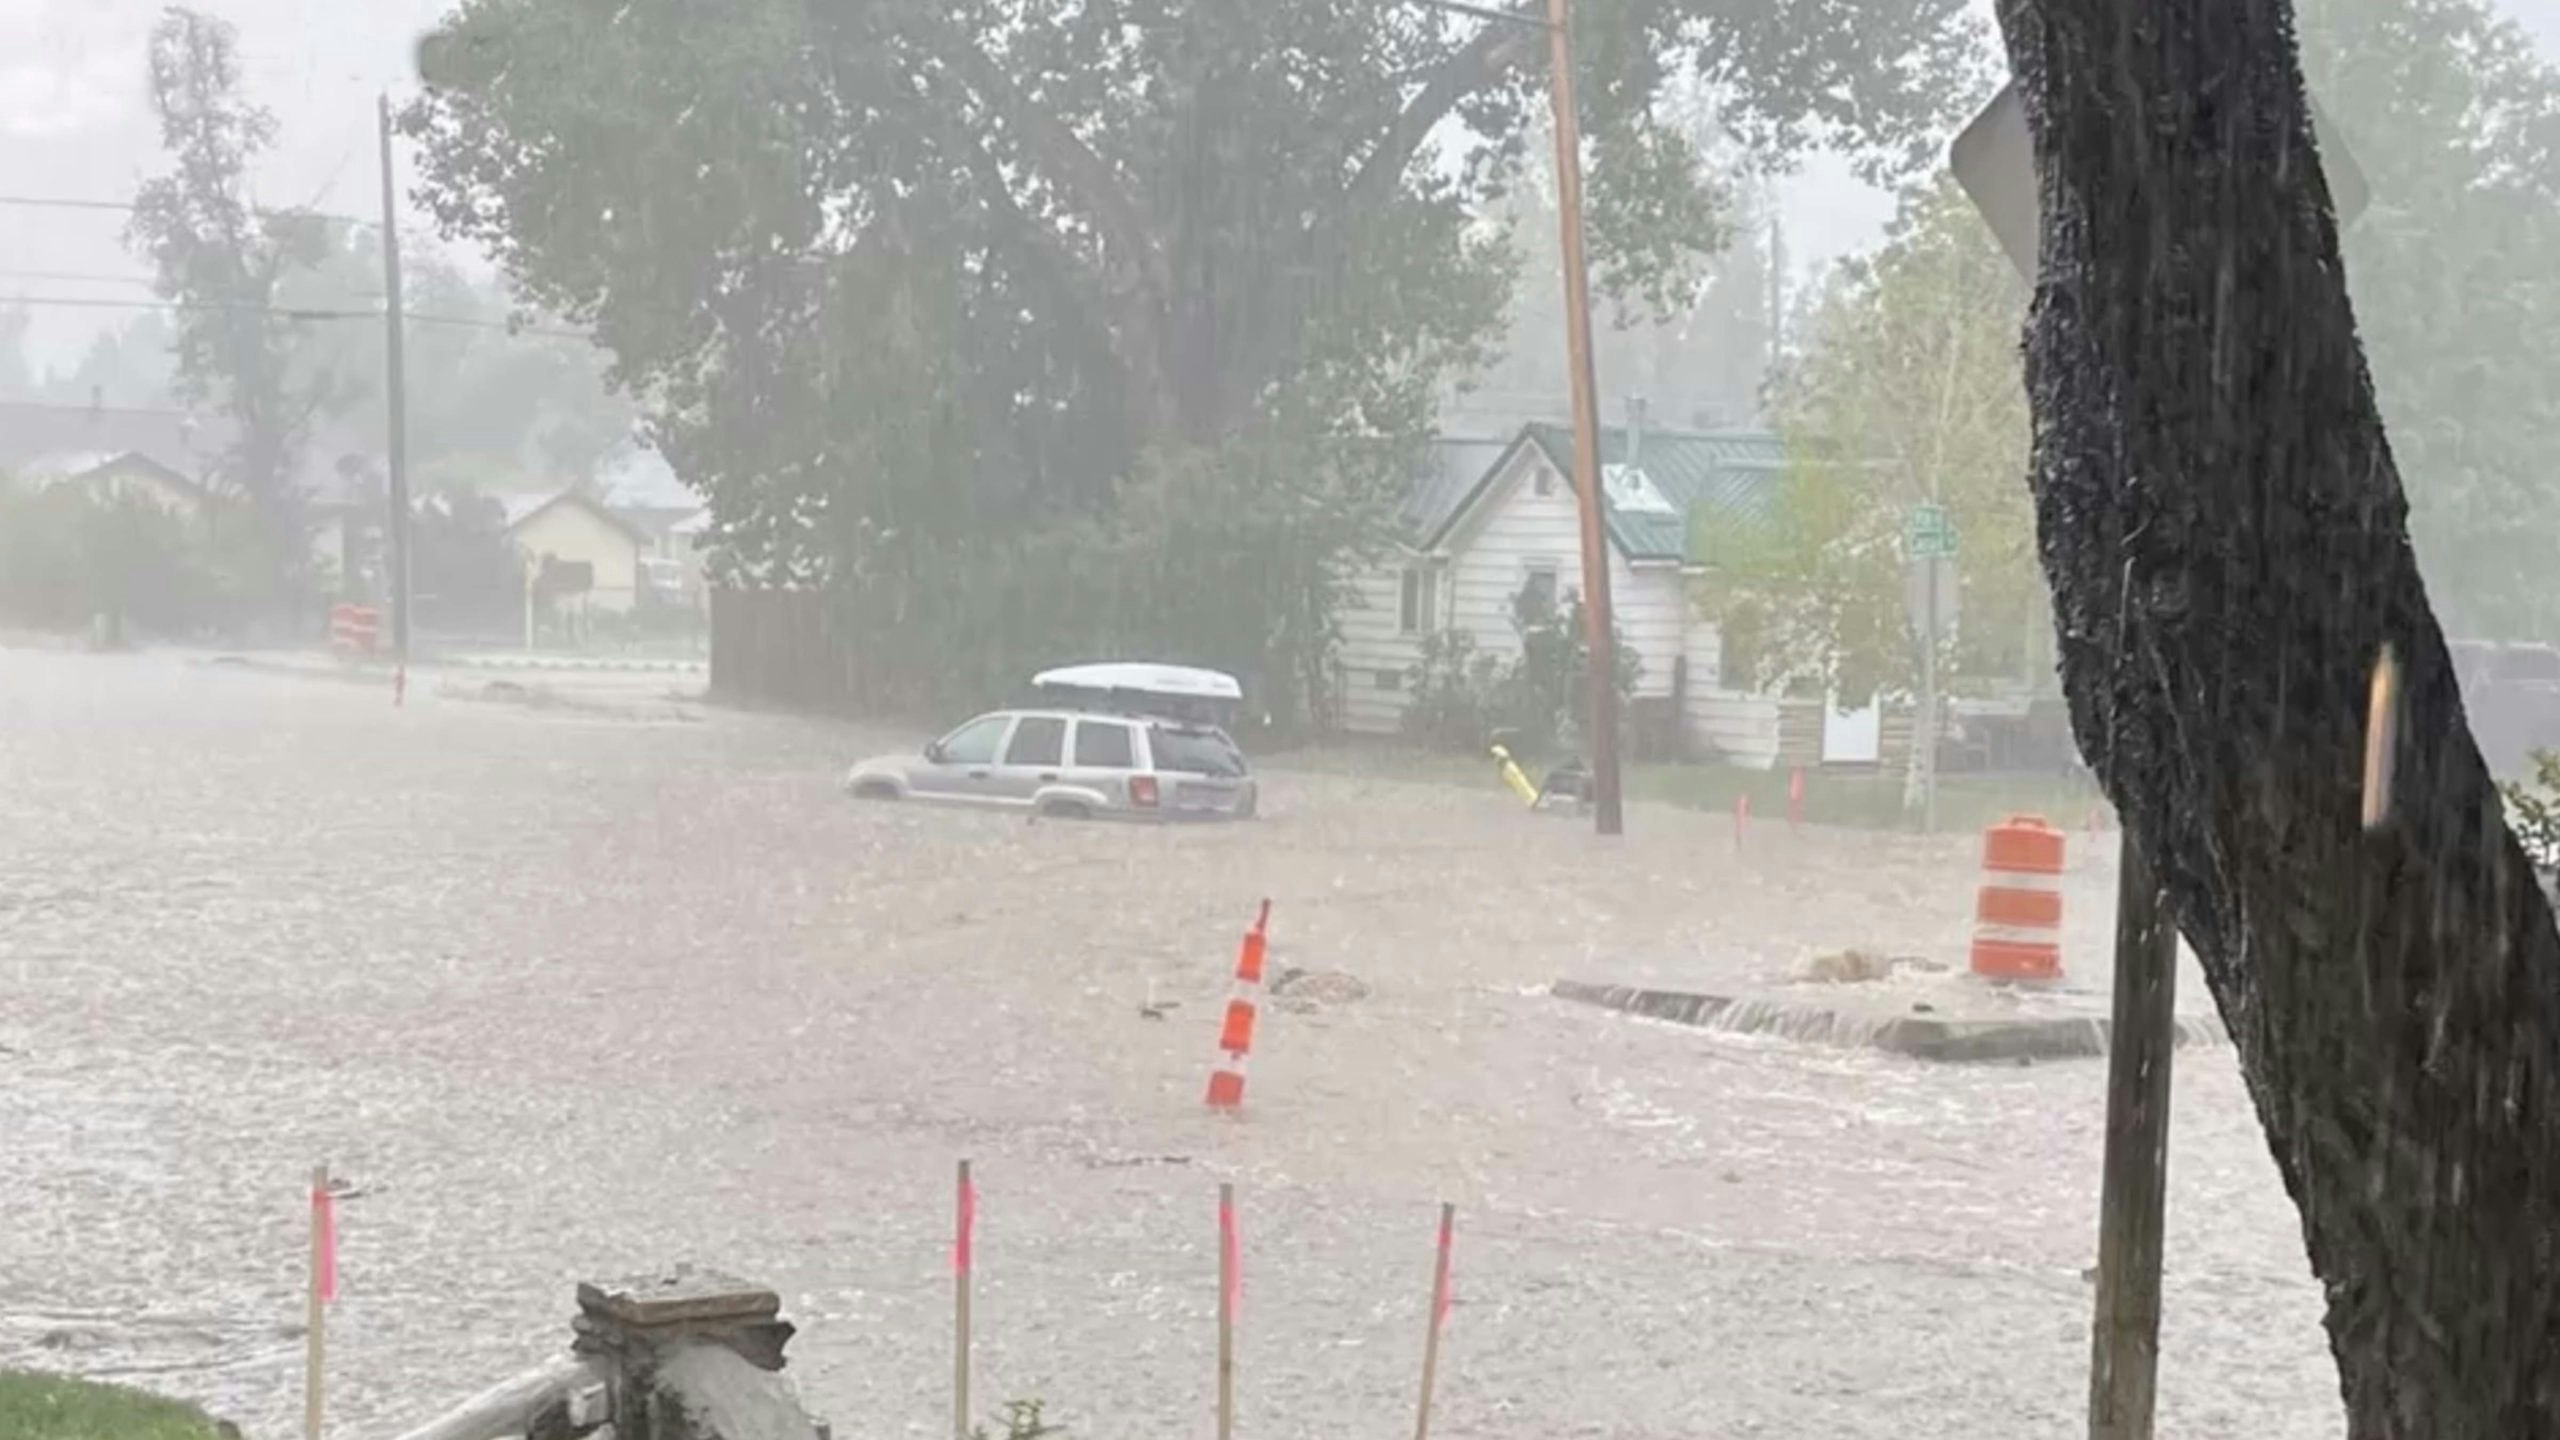 Laramie flood 8 15 22 scaled